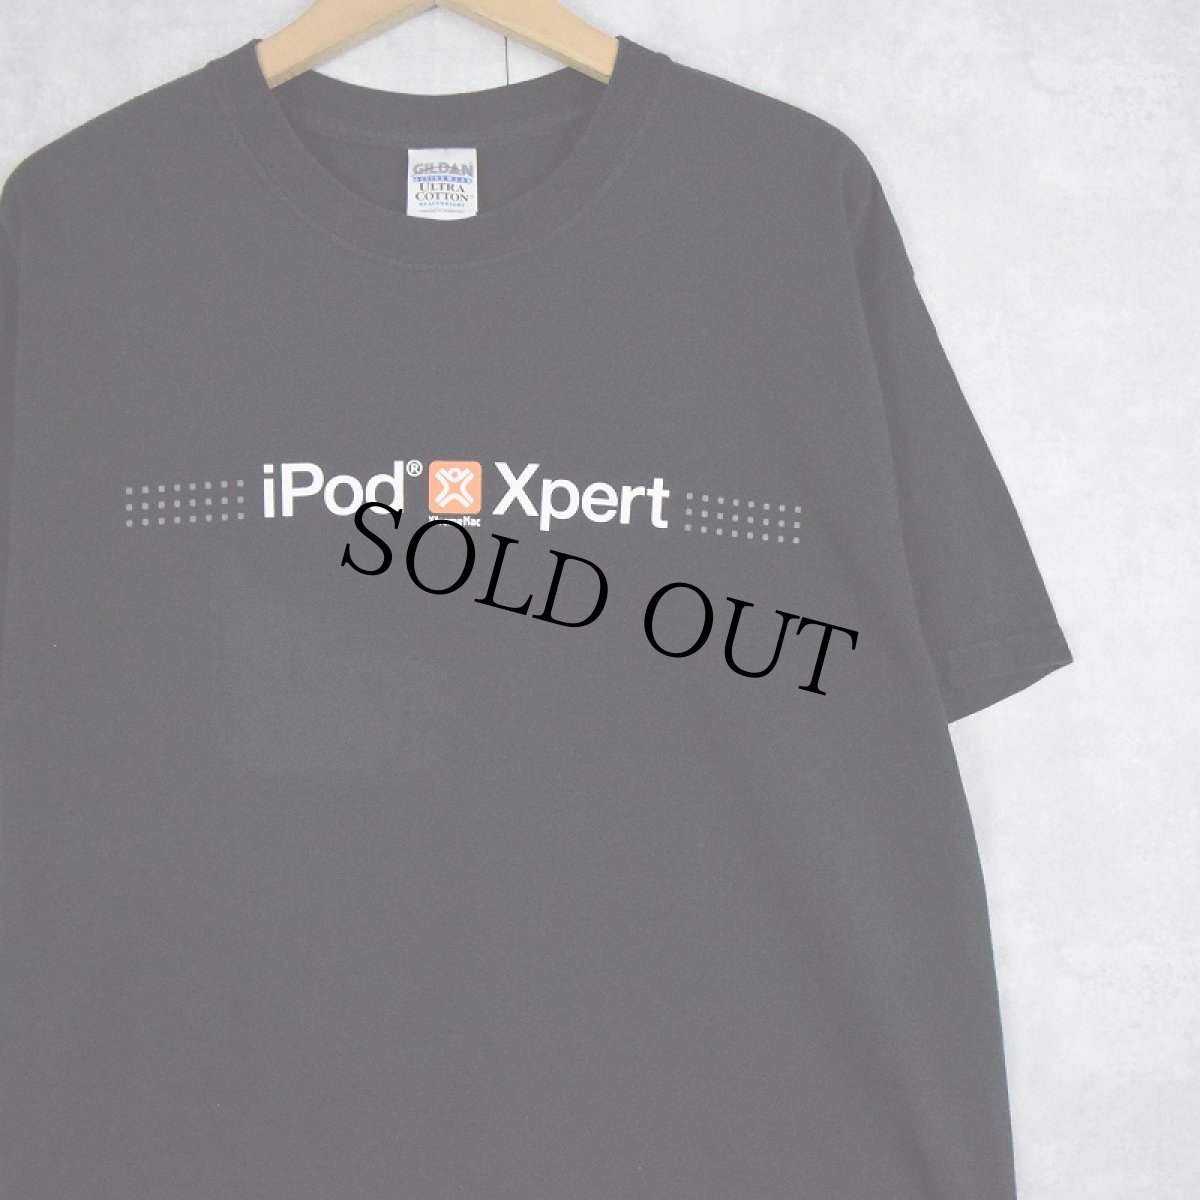 画像1: Apple "iPod Xpert" プリントTシャツ L (1)